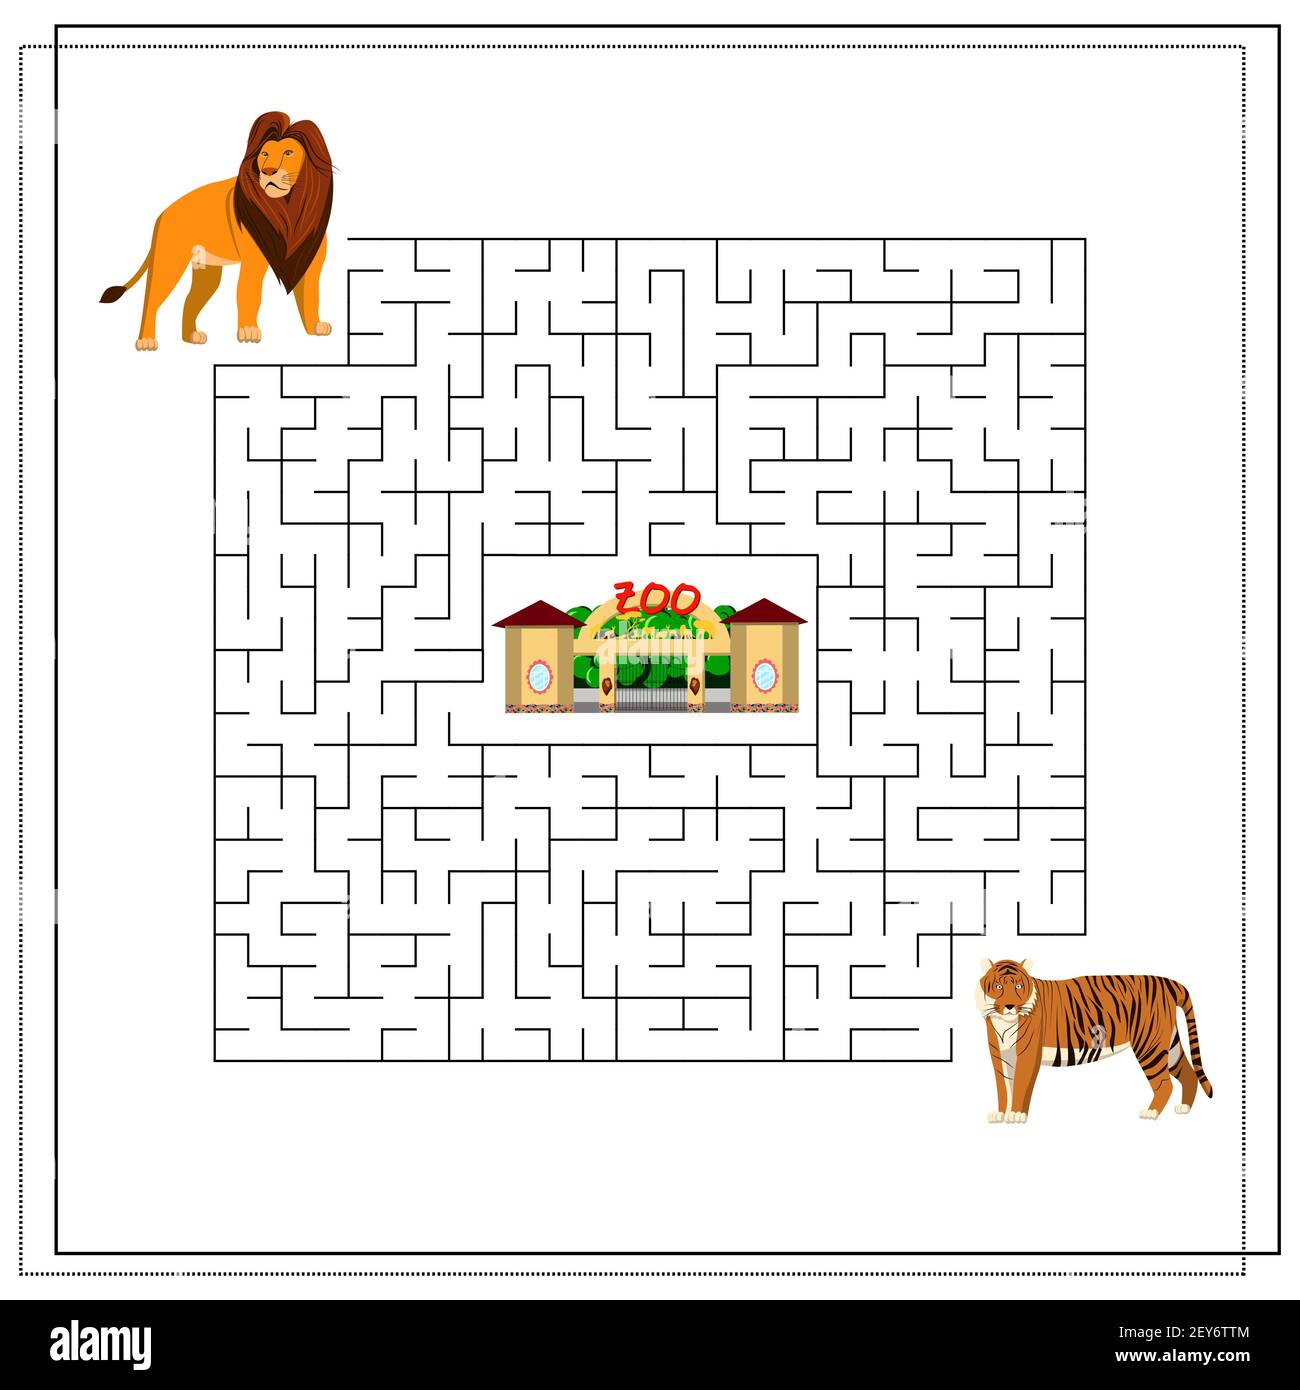 Ein Labyrinth Puzzle-Spiel für Kinder. Hilf mir, durch das Labyrinth zu  kommen. Löwe, Tiger, Zoo. Vektorgrafik isoliert auf weißem Hintergrund  Stock-Vektorgrafik - Alamy